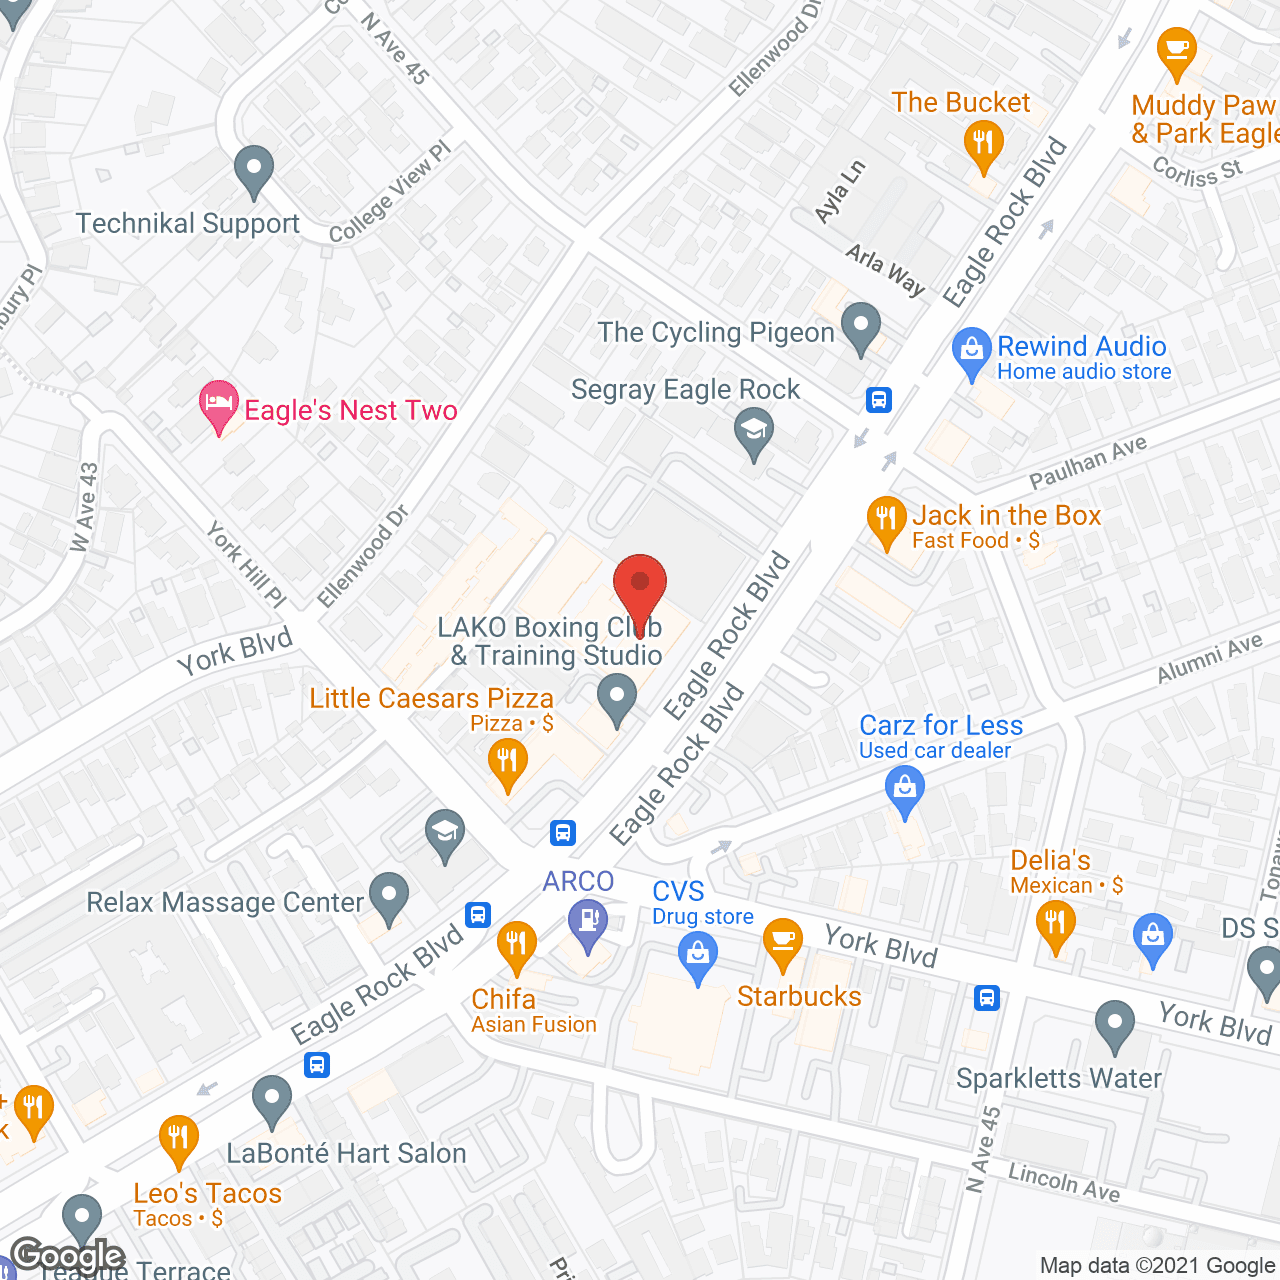 Villa Piedra Apartments in google map